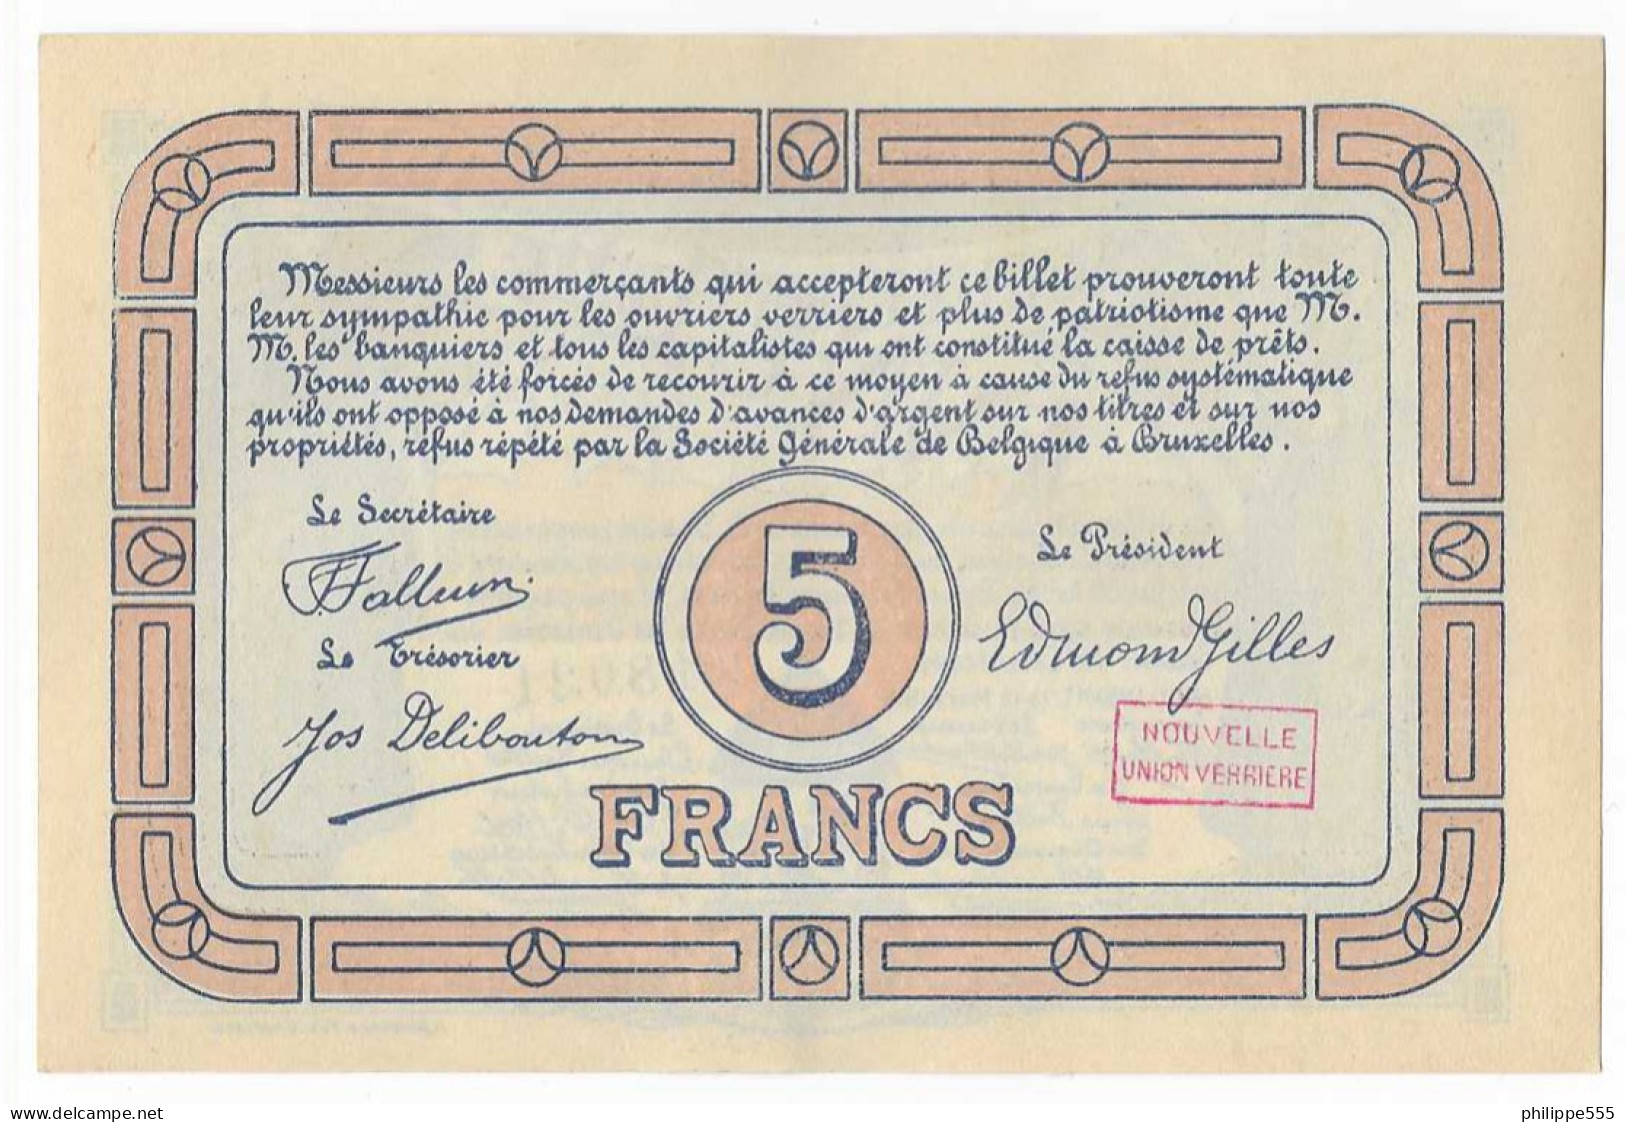 Noodgeld Lodelinsart 5 Frank 1915 - 5 Francs